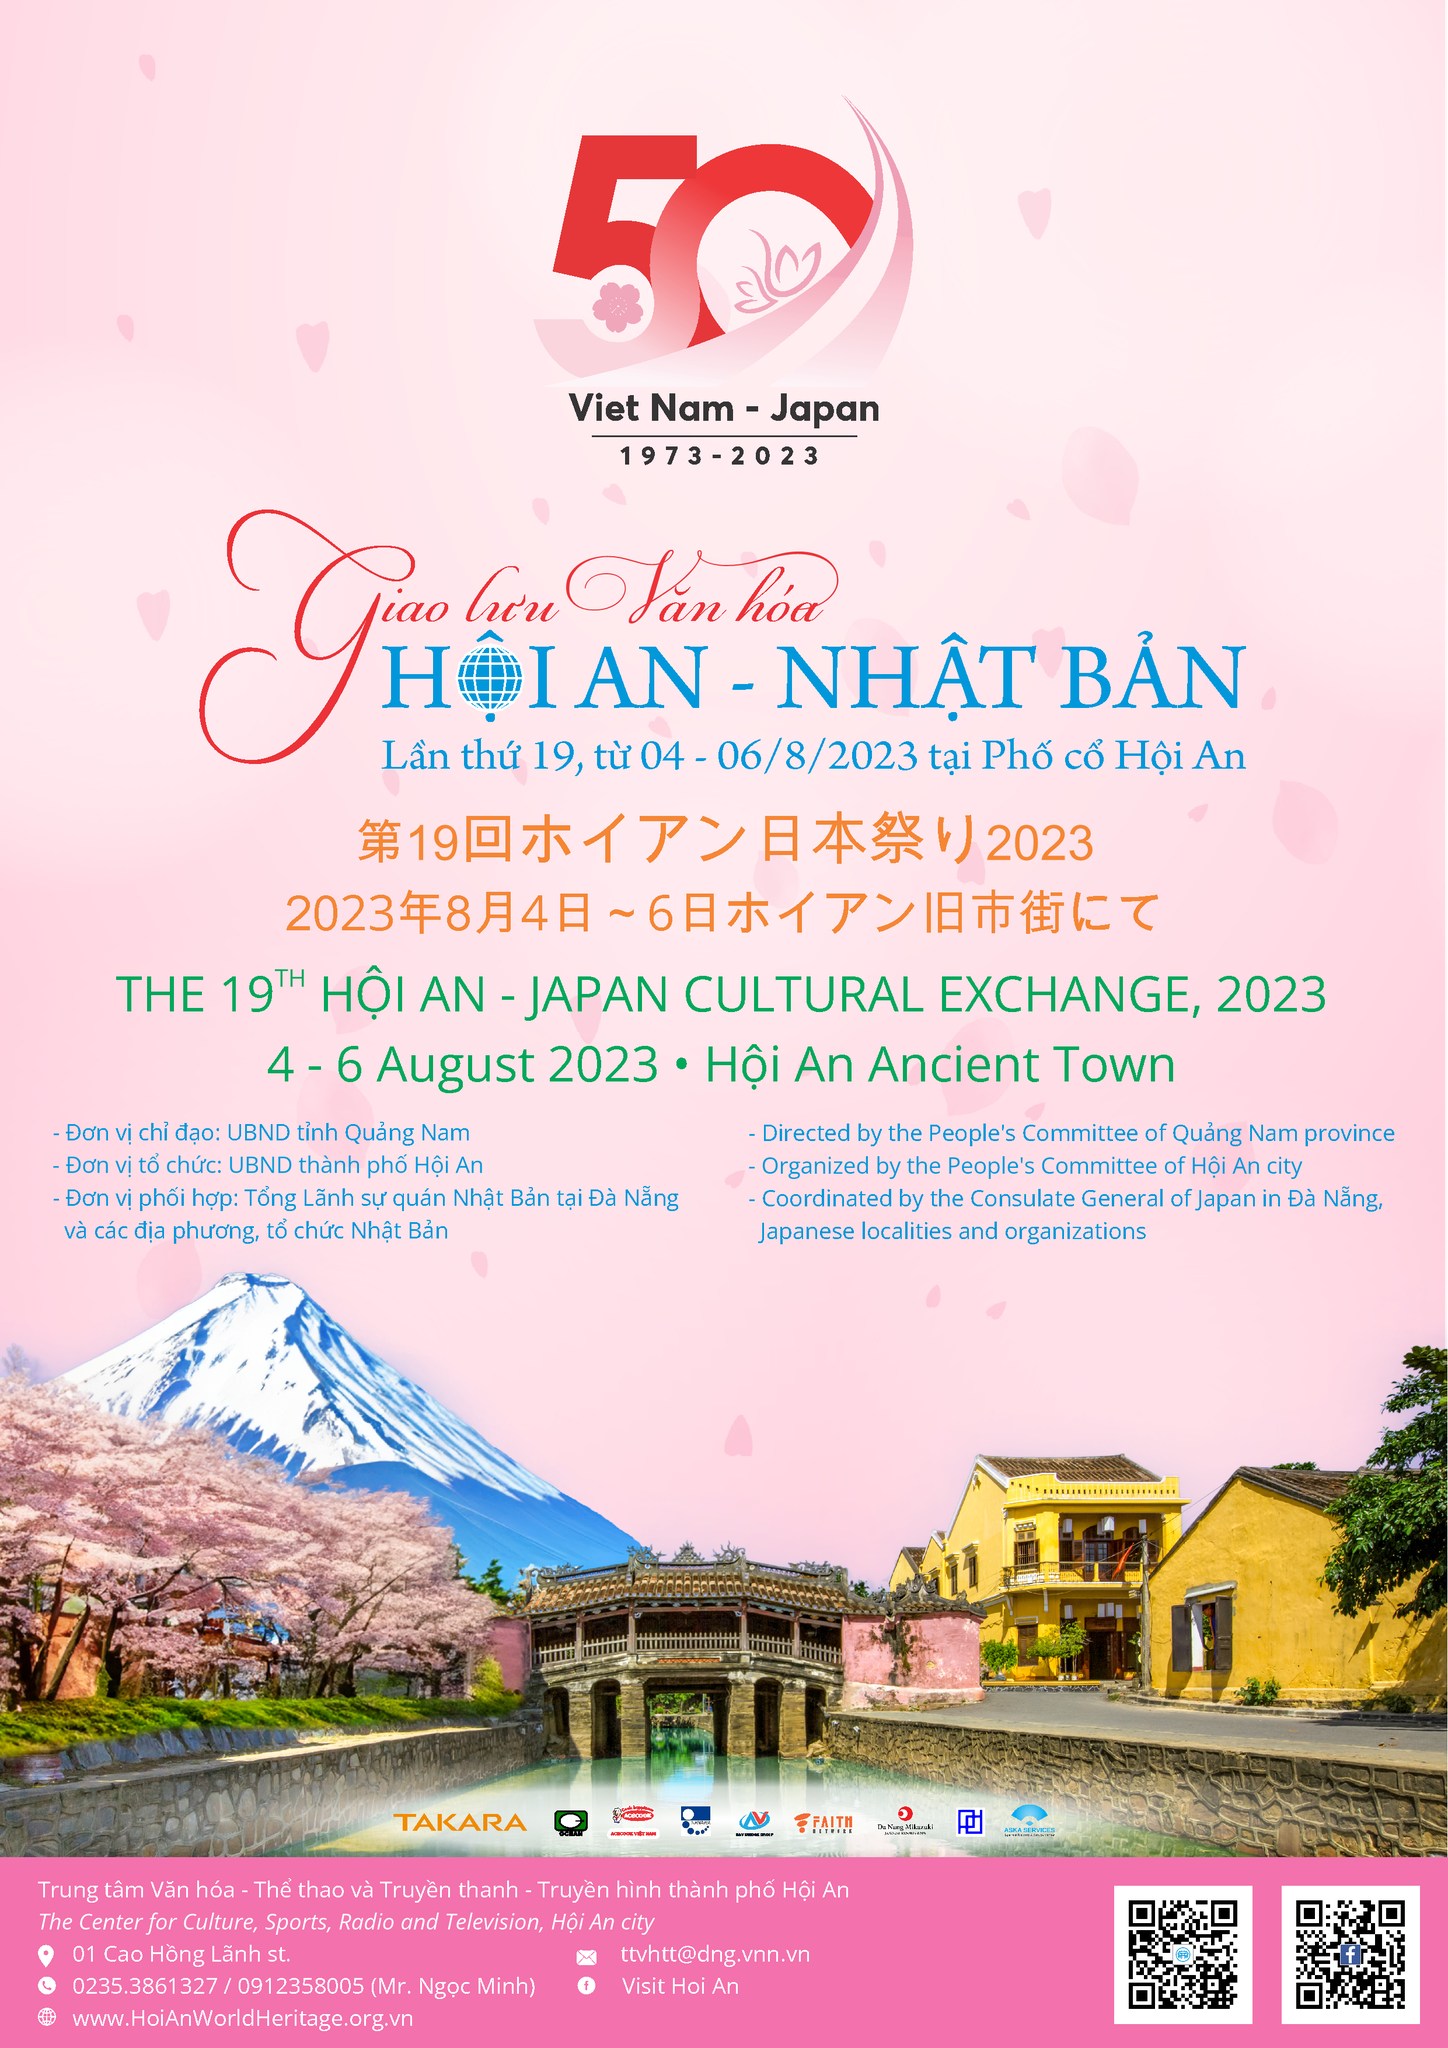 Giao lưu văn hóa Hội An - Nhật Bản Lần thứ 19, năm 2023 VN